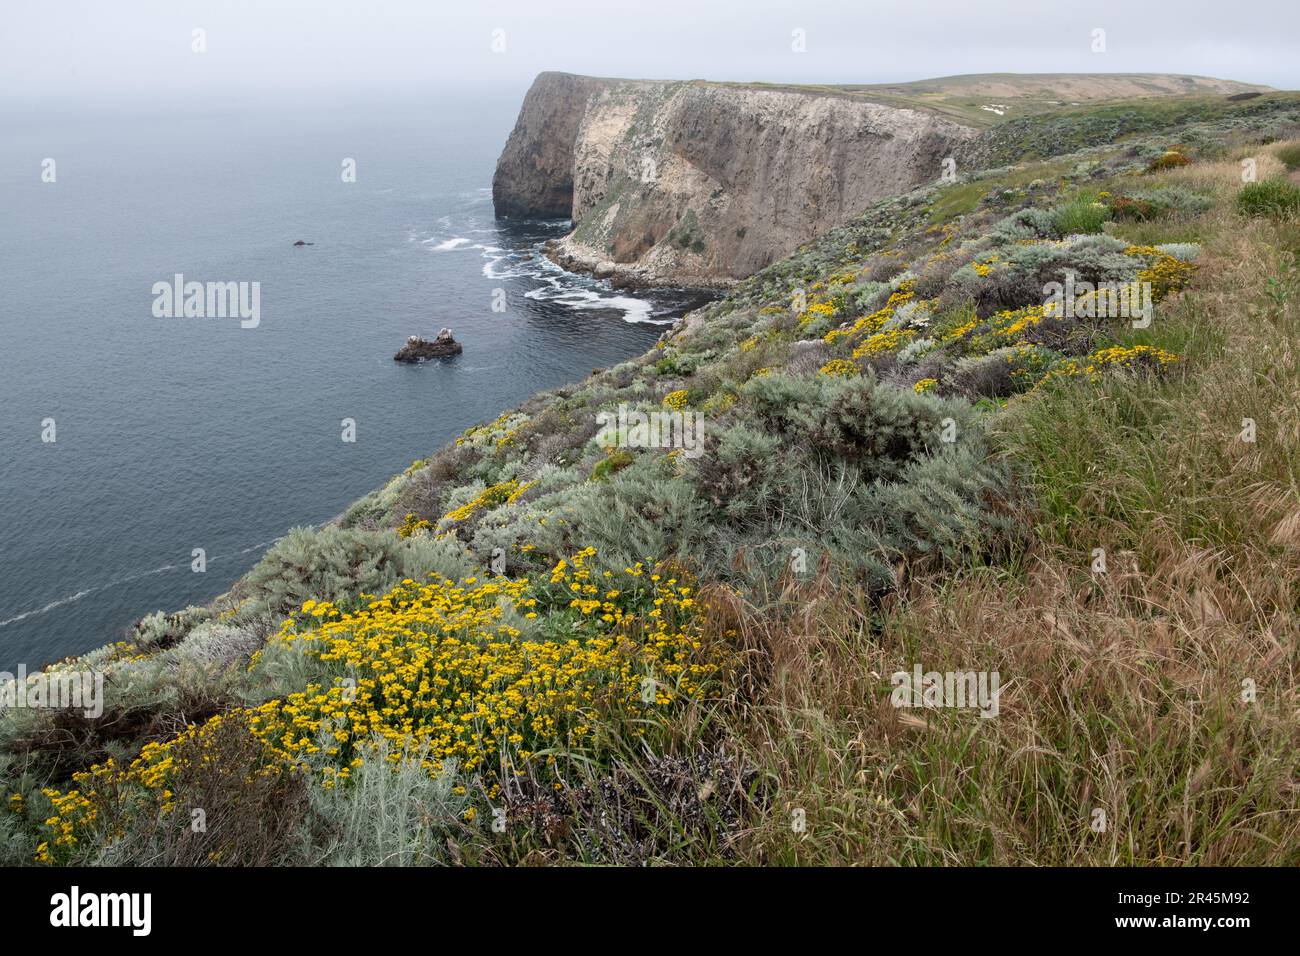 Le tournesol Woolly en bord de mer, l'Eriophyllum staechadifolium, la sauge et d'autres plantes indigènes forment une communauté sur les falaises côtières du parc des îles Anglo-Normandes. Banque D'Images